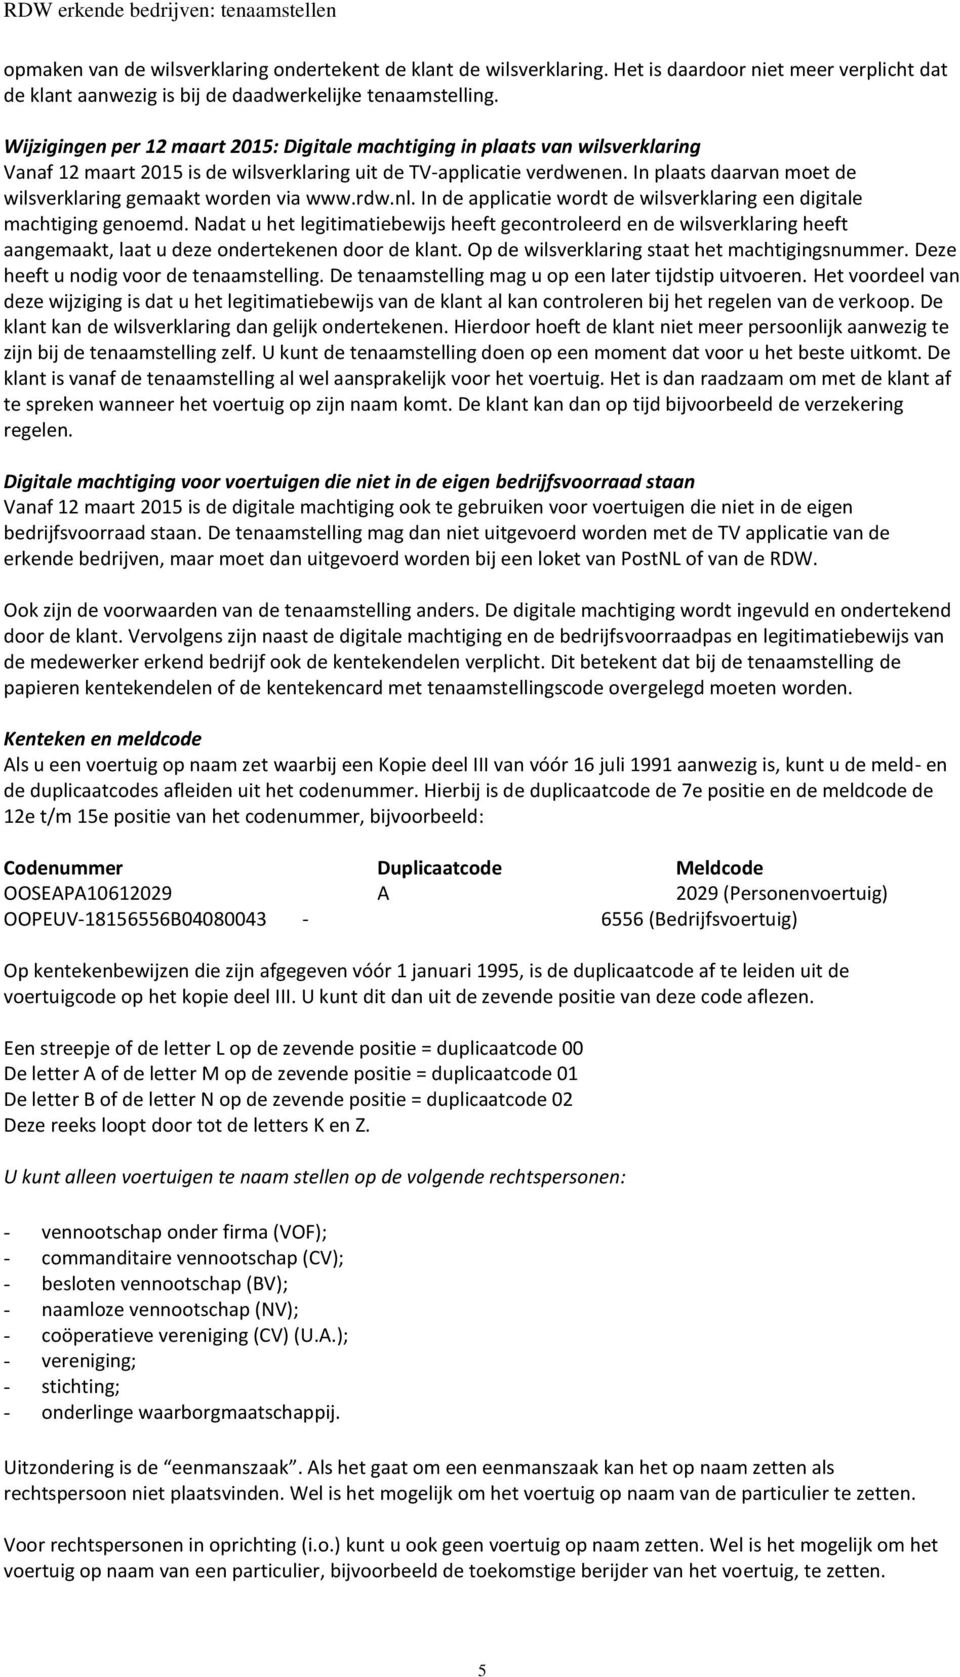 In plaats daarvan moet de wilsverklaring gemaakt worden via www.rdw.nl. In de applicatie wordt de wilsverklaring een digitale machtiging genoemd.